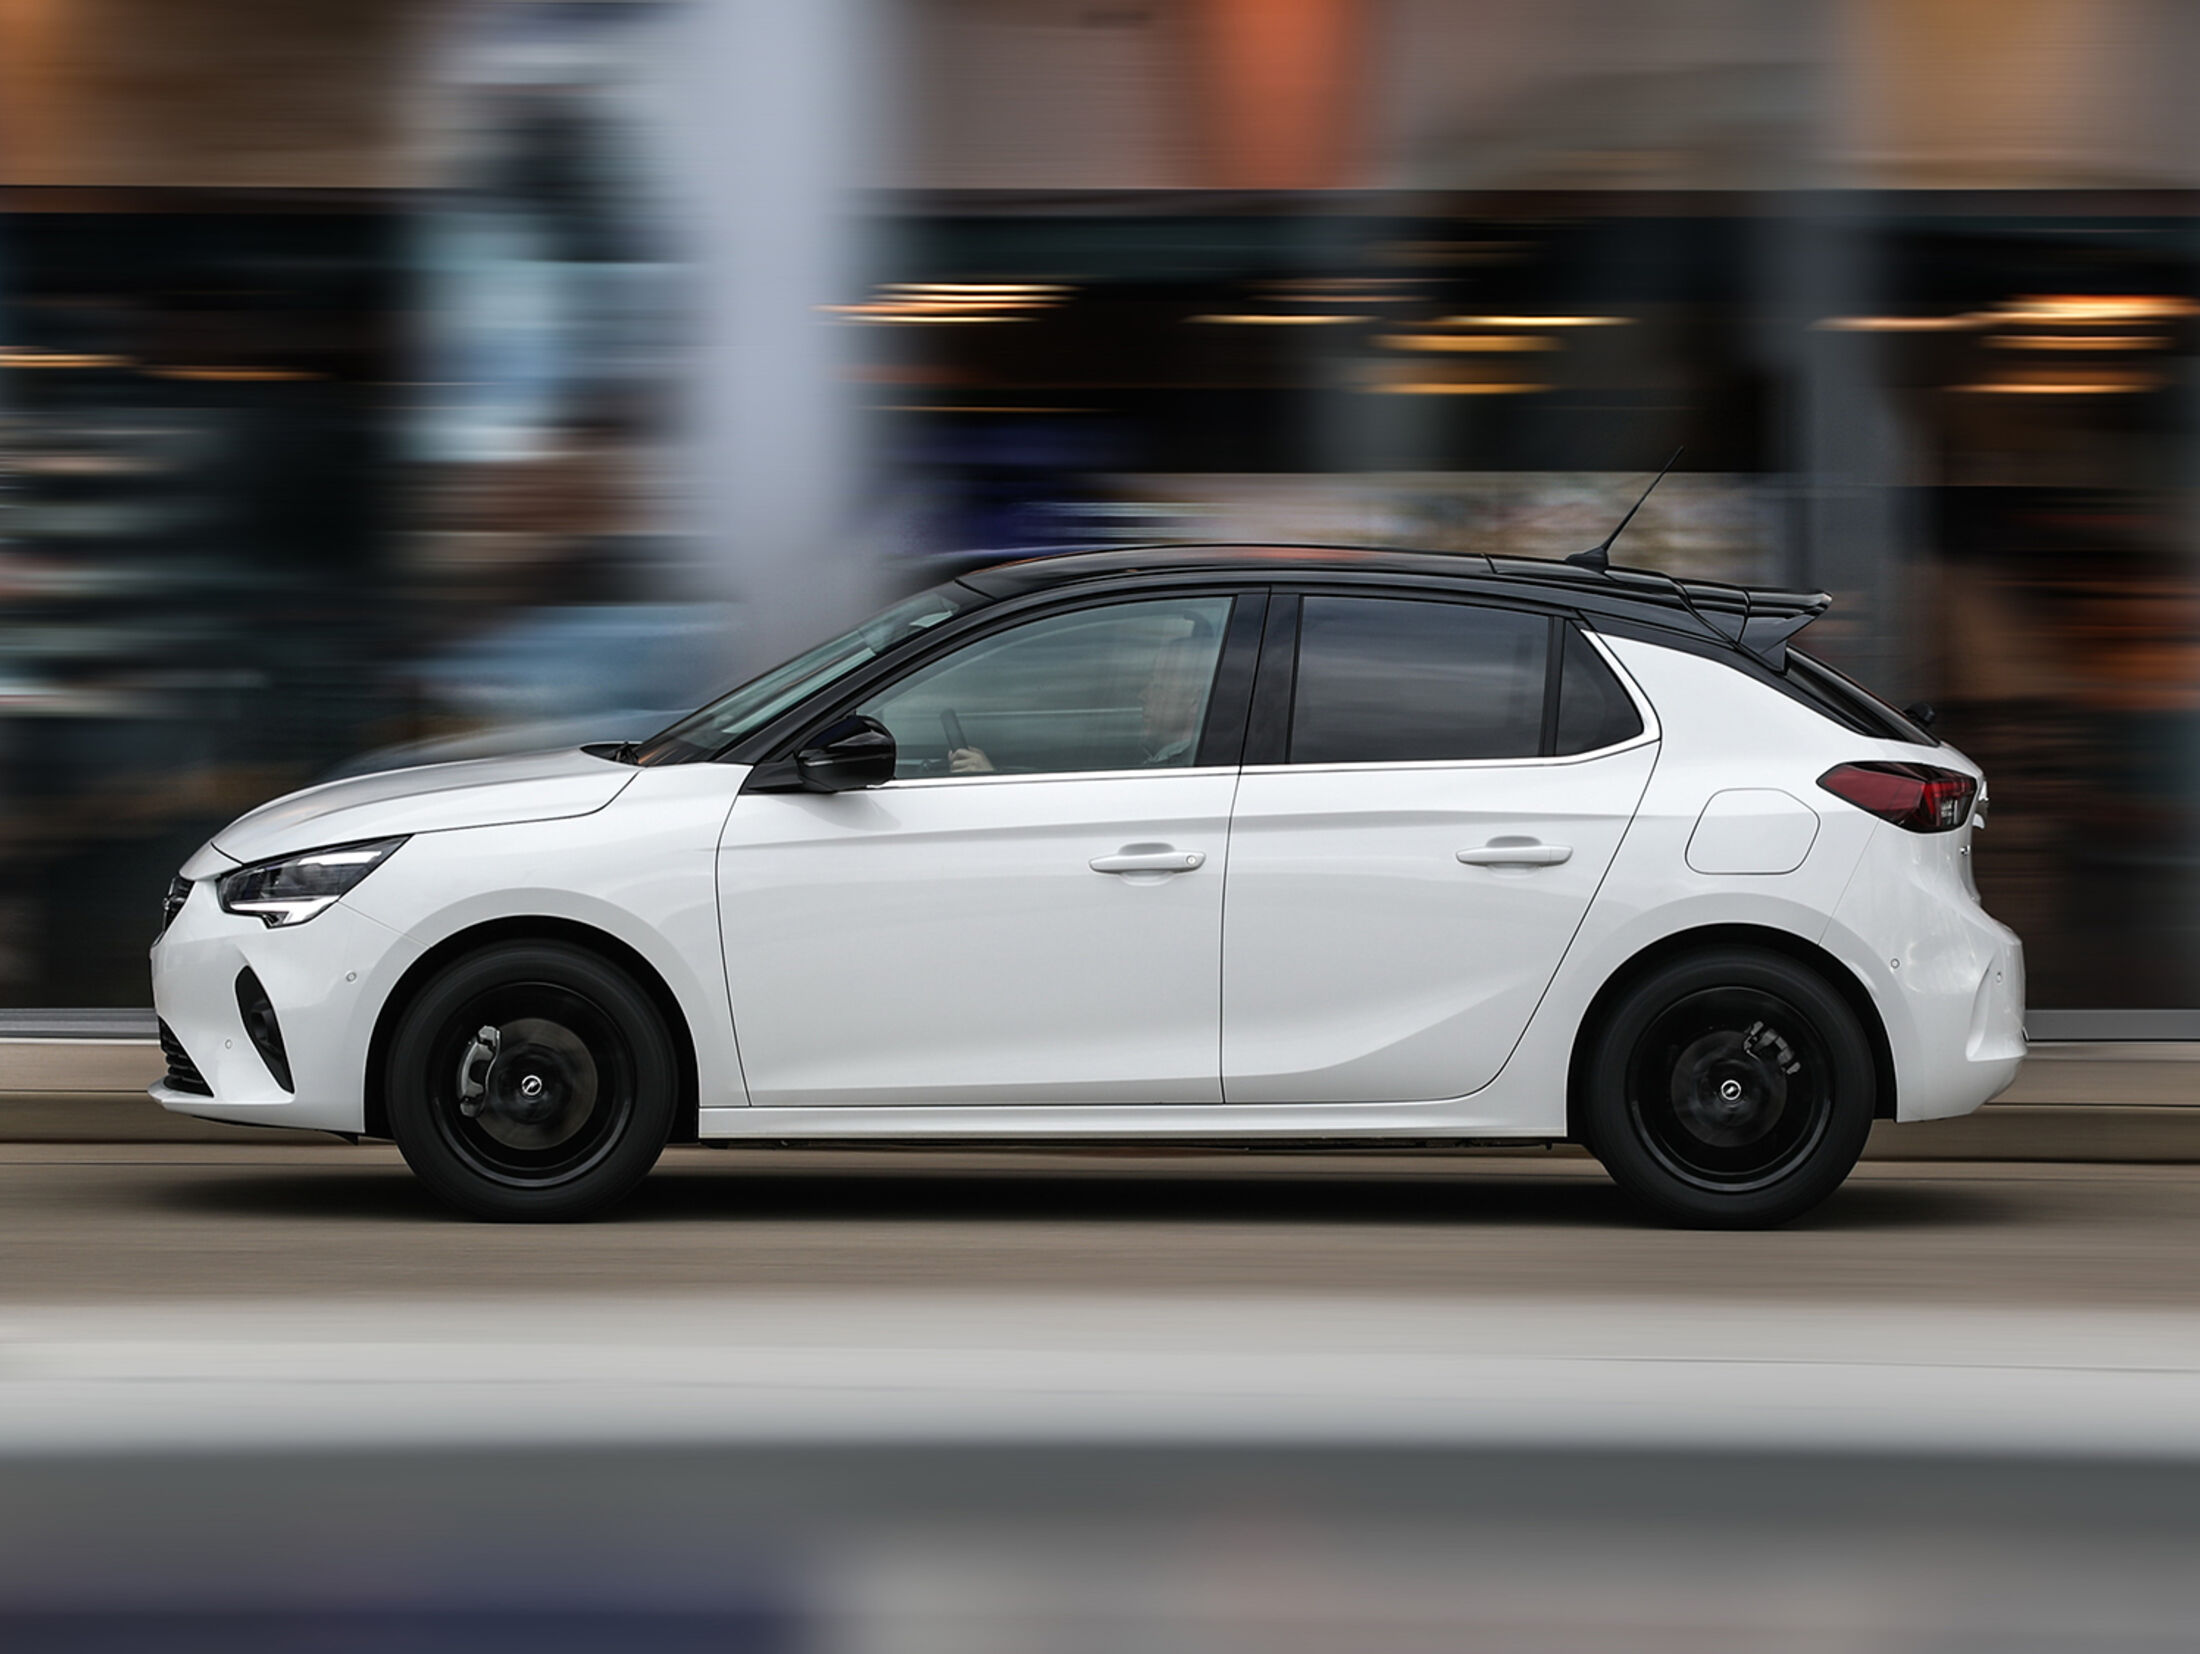 https://imgr1.auto-motor-und-sport.de/Opel-Corsa-1-2-DI-Turbo-Exterieur-jsonLd4x3-677a5ed1-1658763.jpg